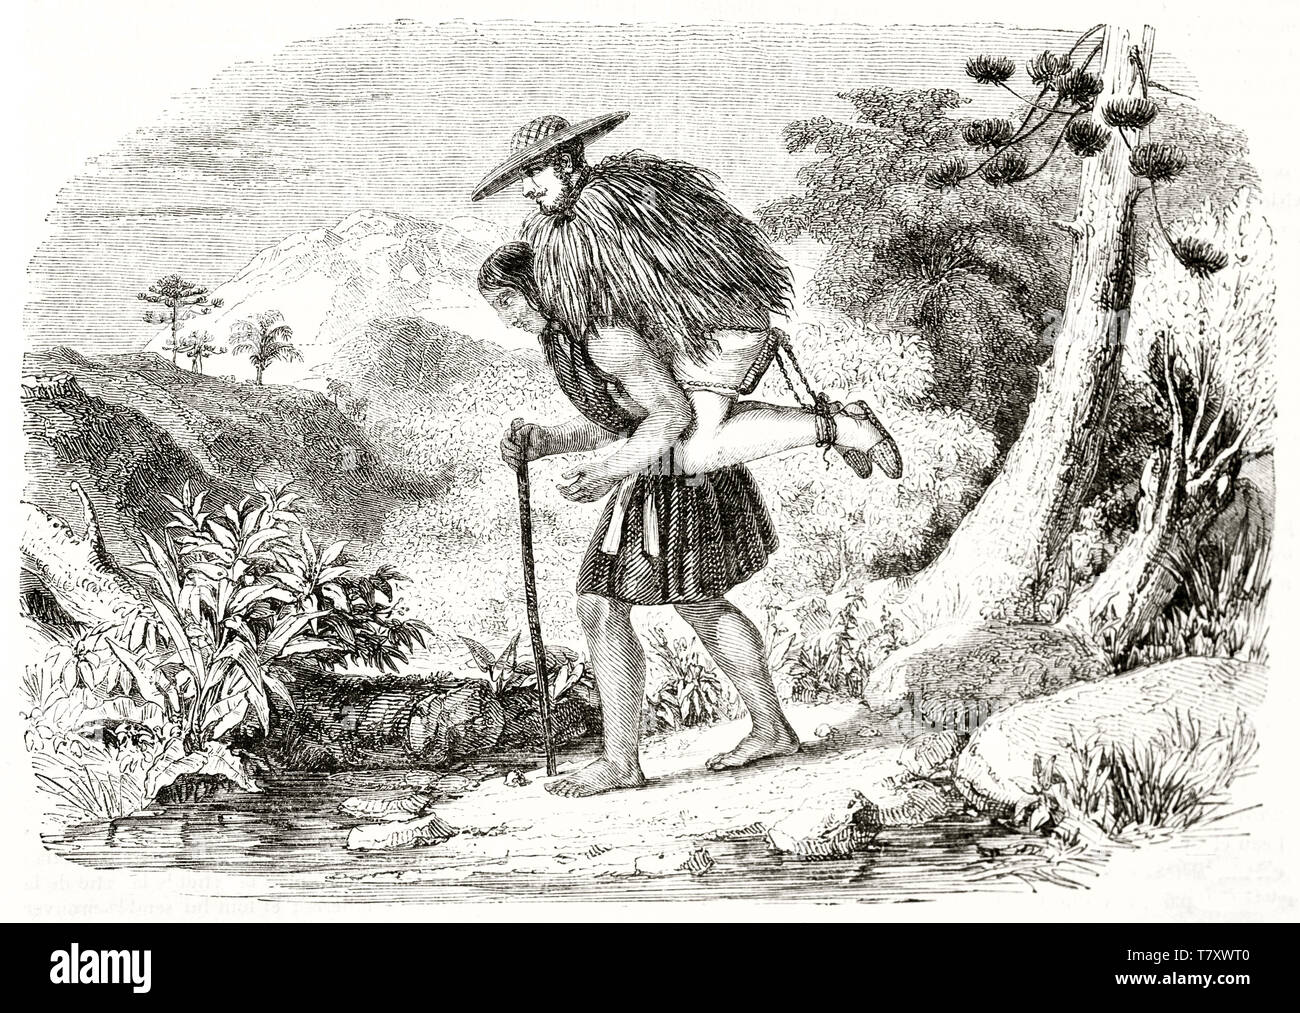 Voir le profil complet du corps d'un homme autochtone realiser un sur son dos à travers la nature en Pasto province République de Nouvelle Grenade. Par De Lattre publ. sur Magasin pittoresque Paris 1848 Banque D'Images